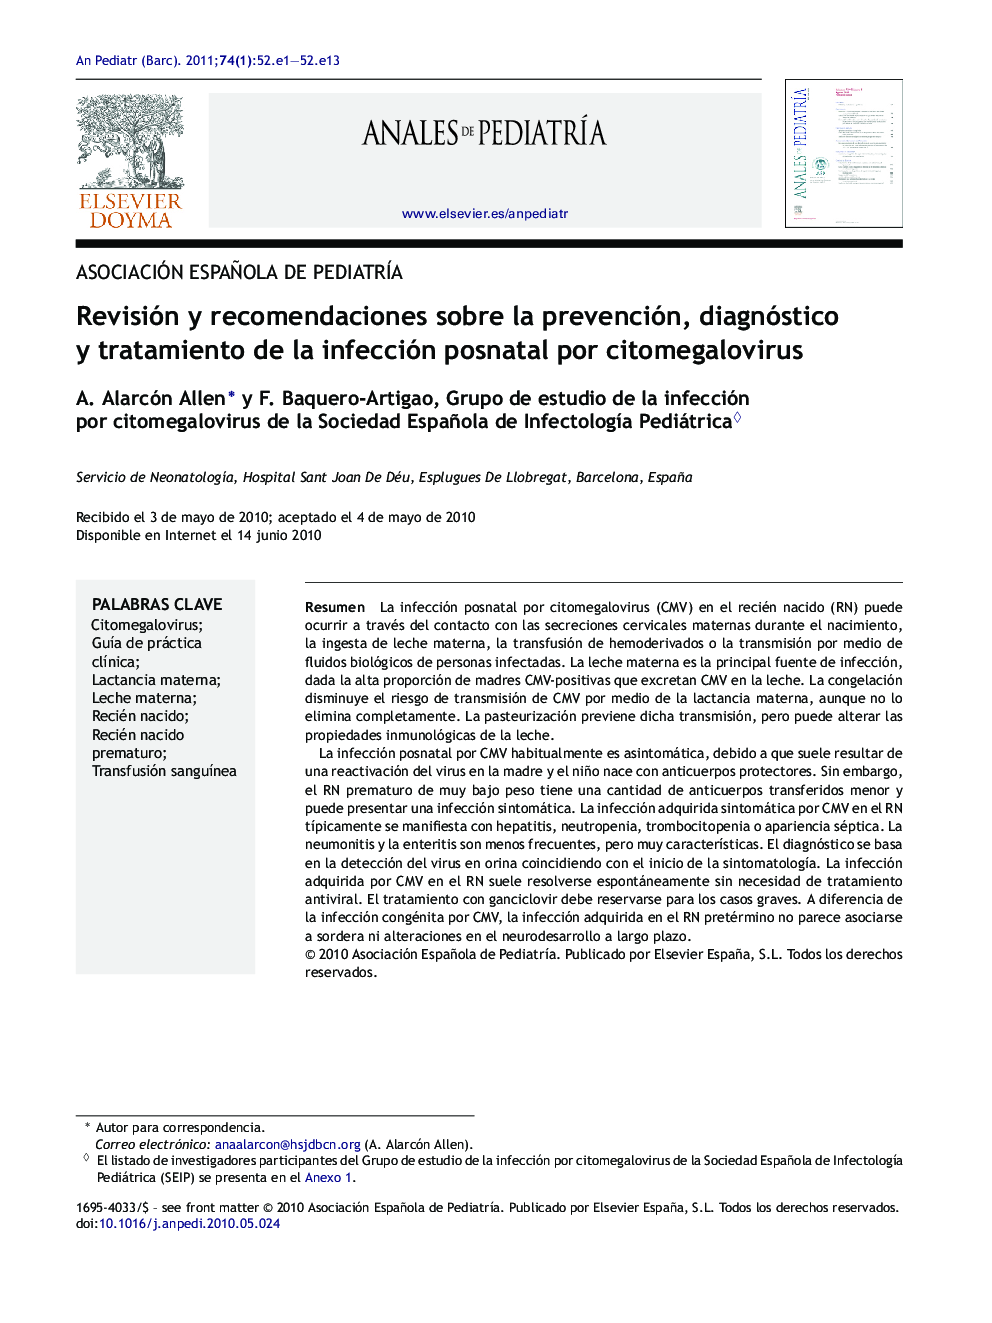 Revisión y recomendaciones sobre la prevención, diagnóstico y tratamiento de la infección posnatal por citomegalovirus